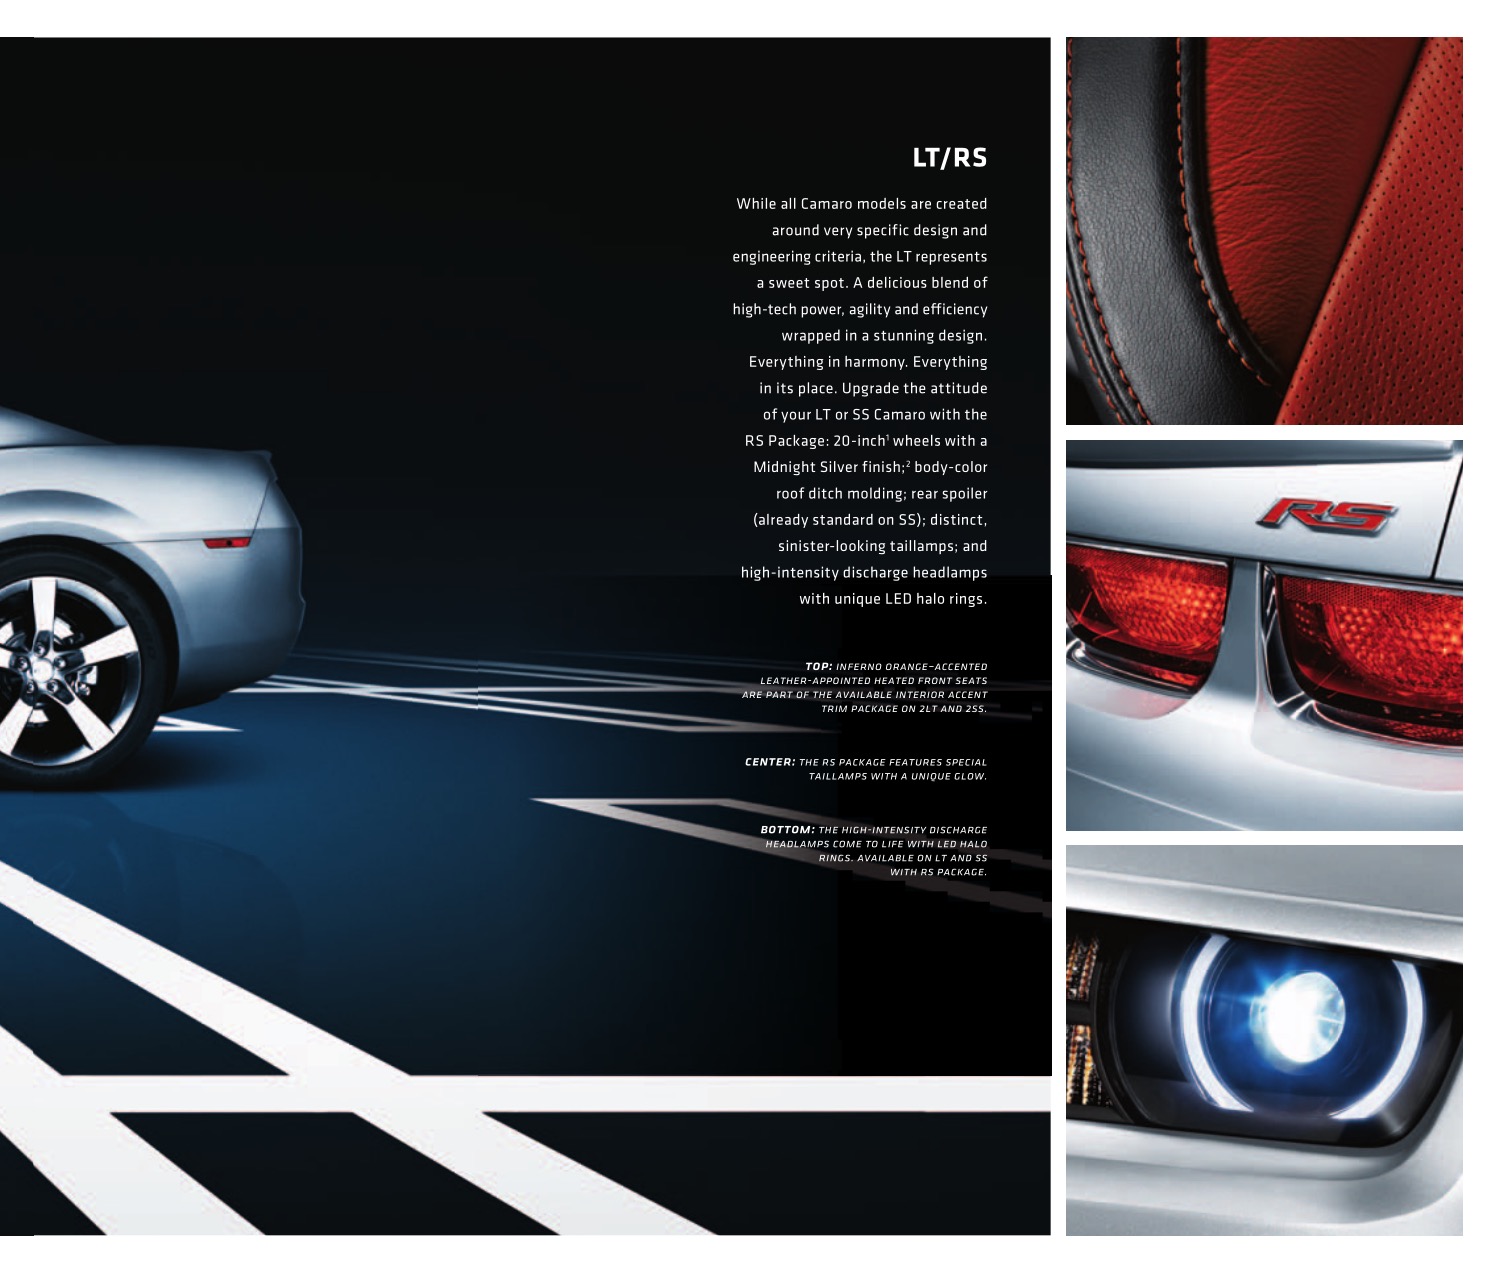 2011 Chev Camaro Brochure Page 4